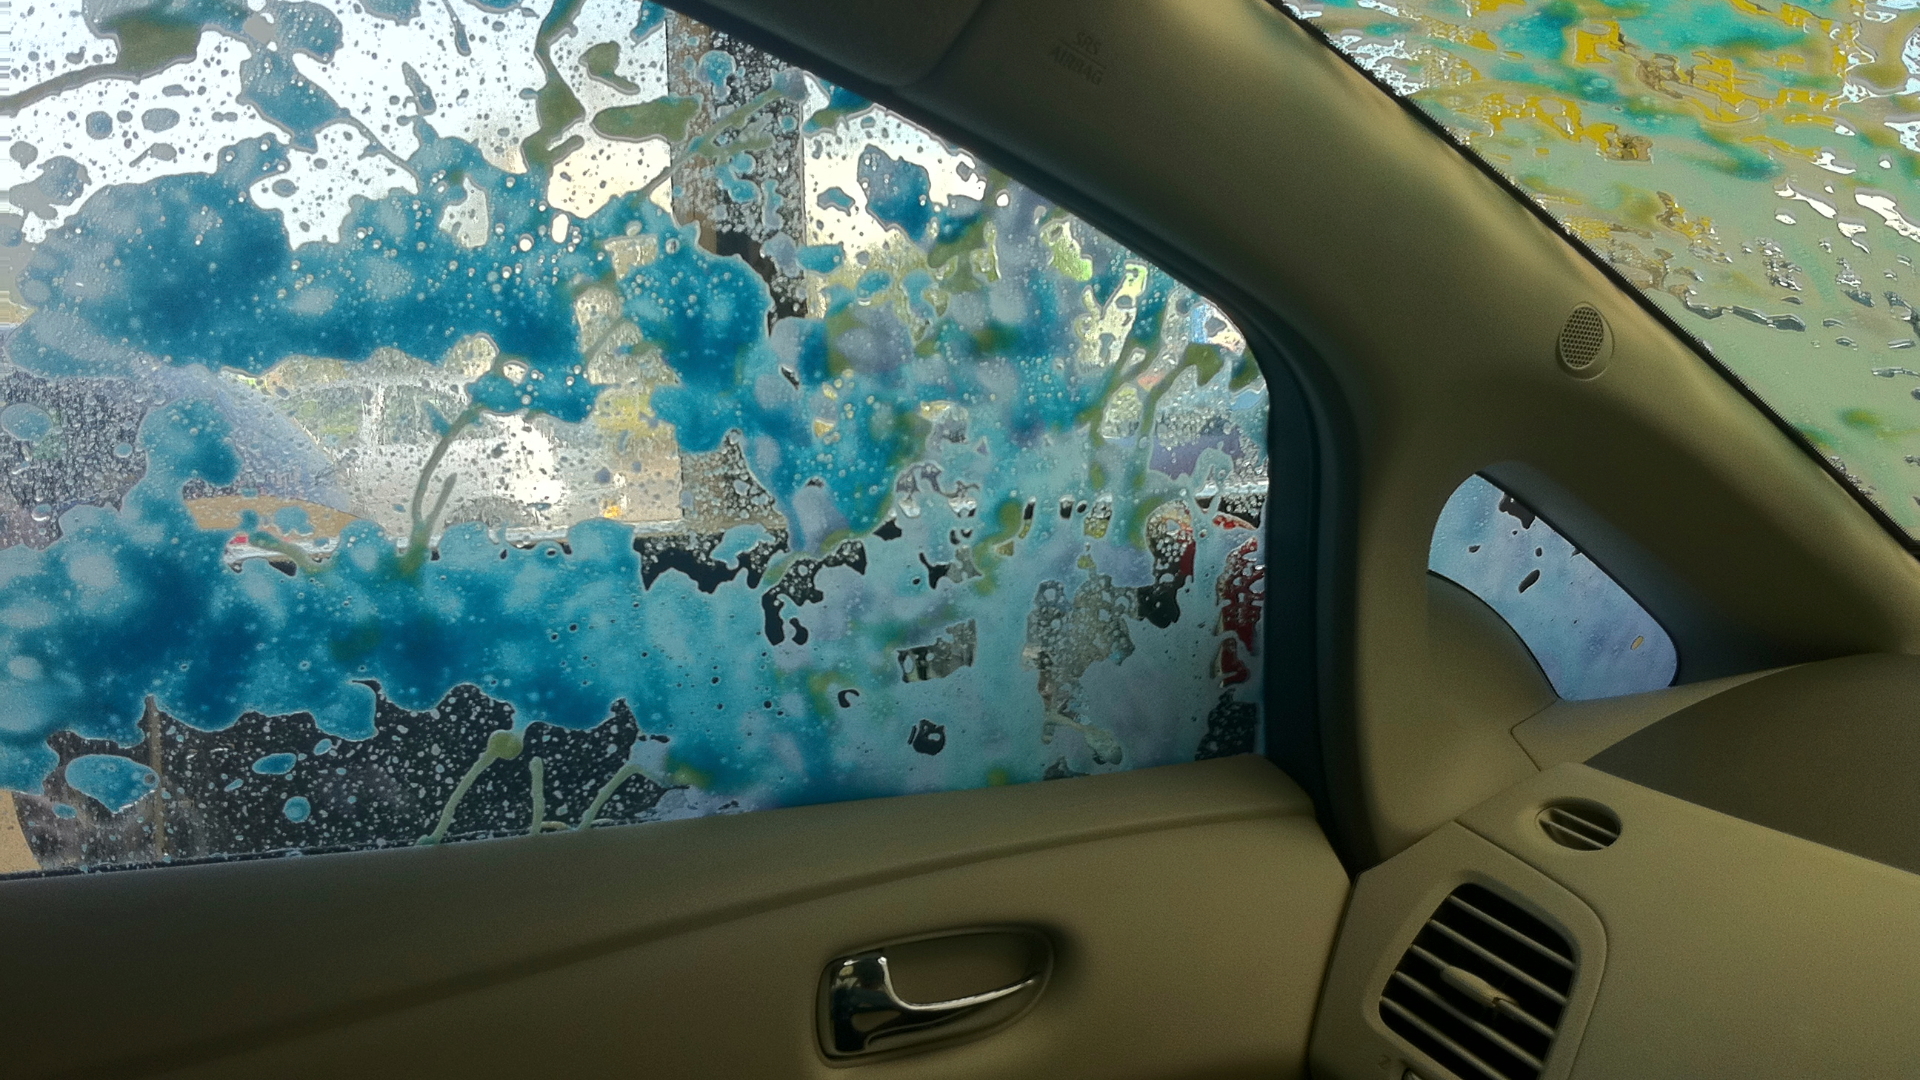 2011 Nissan Leaf in Car Wash